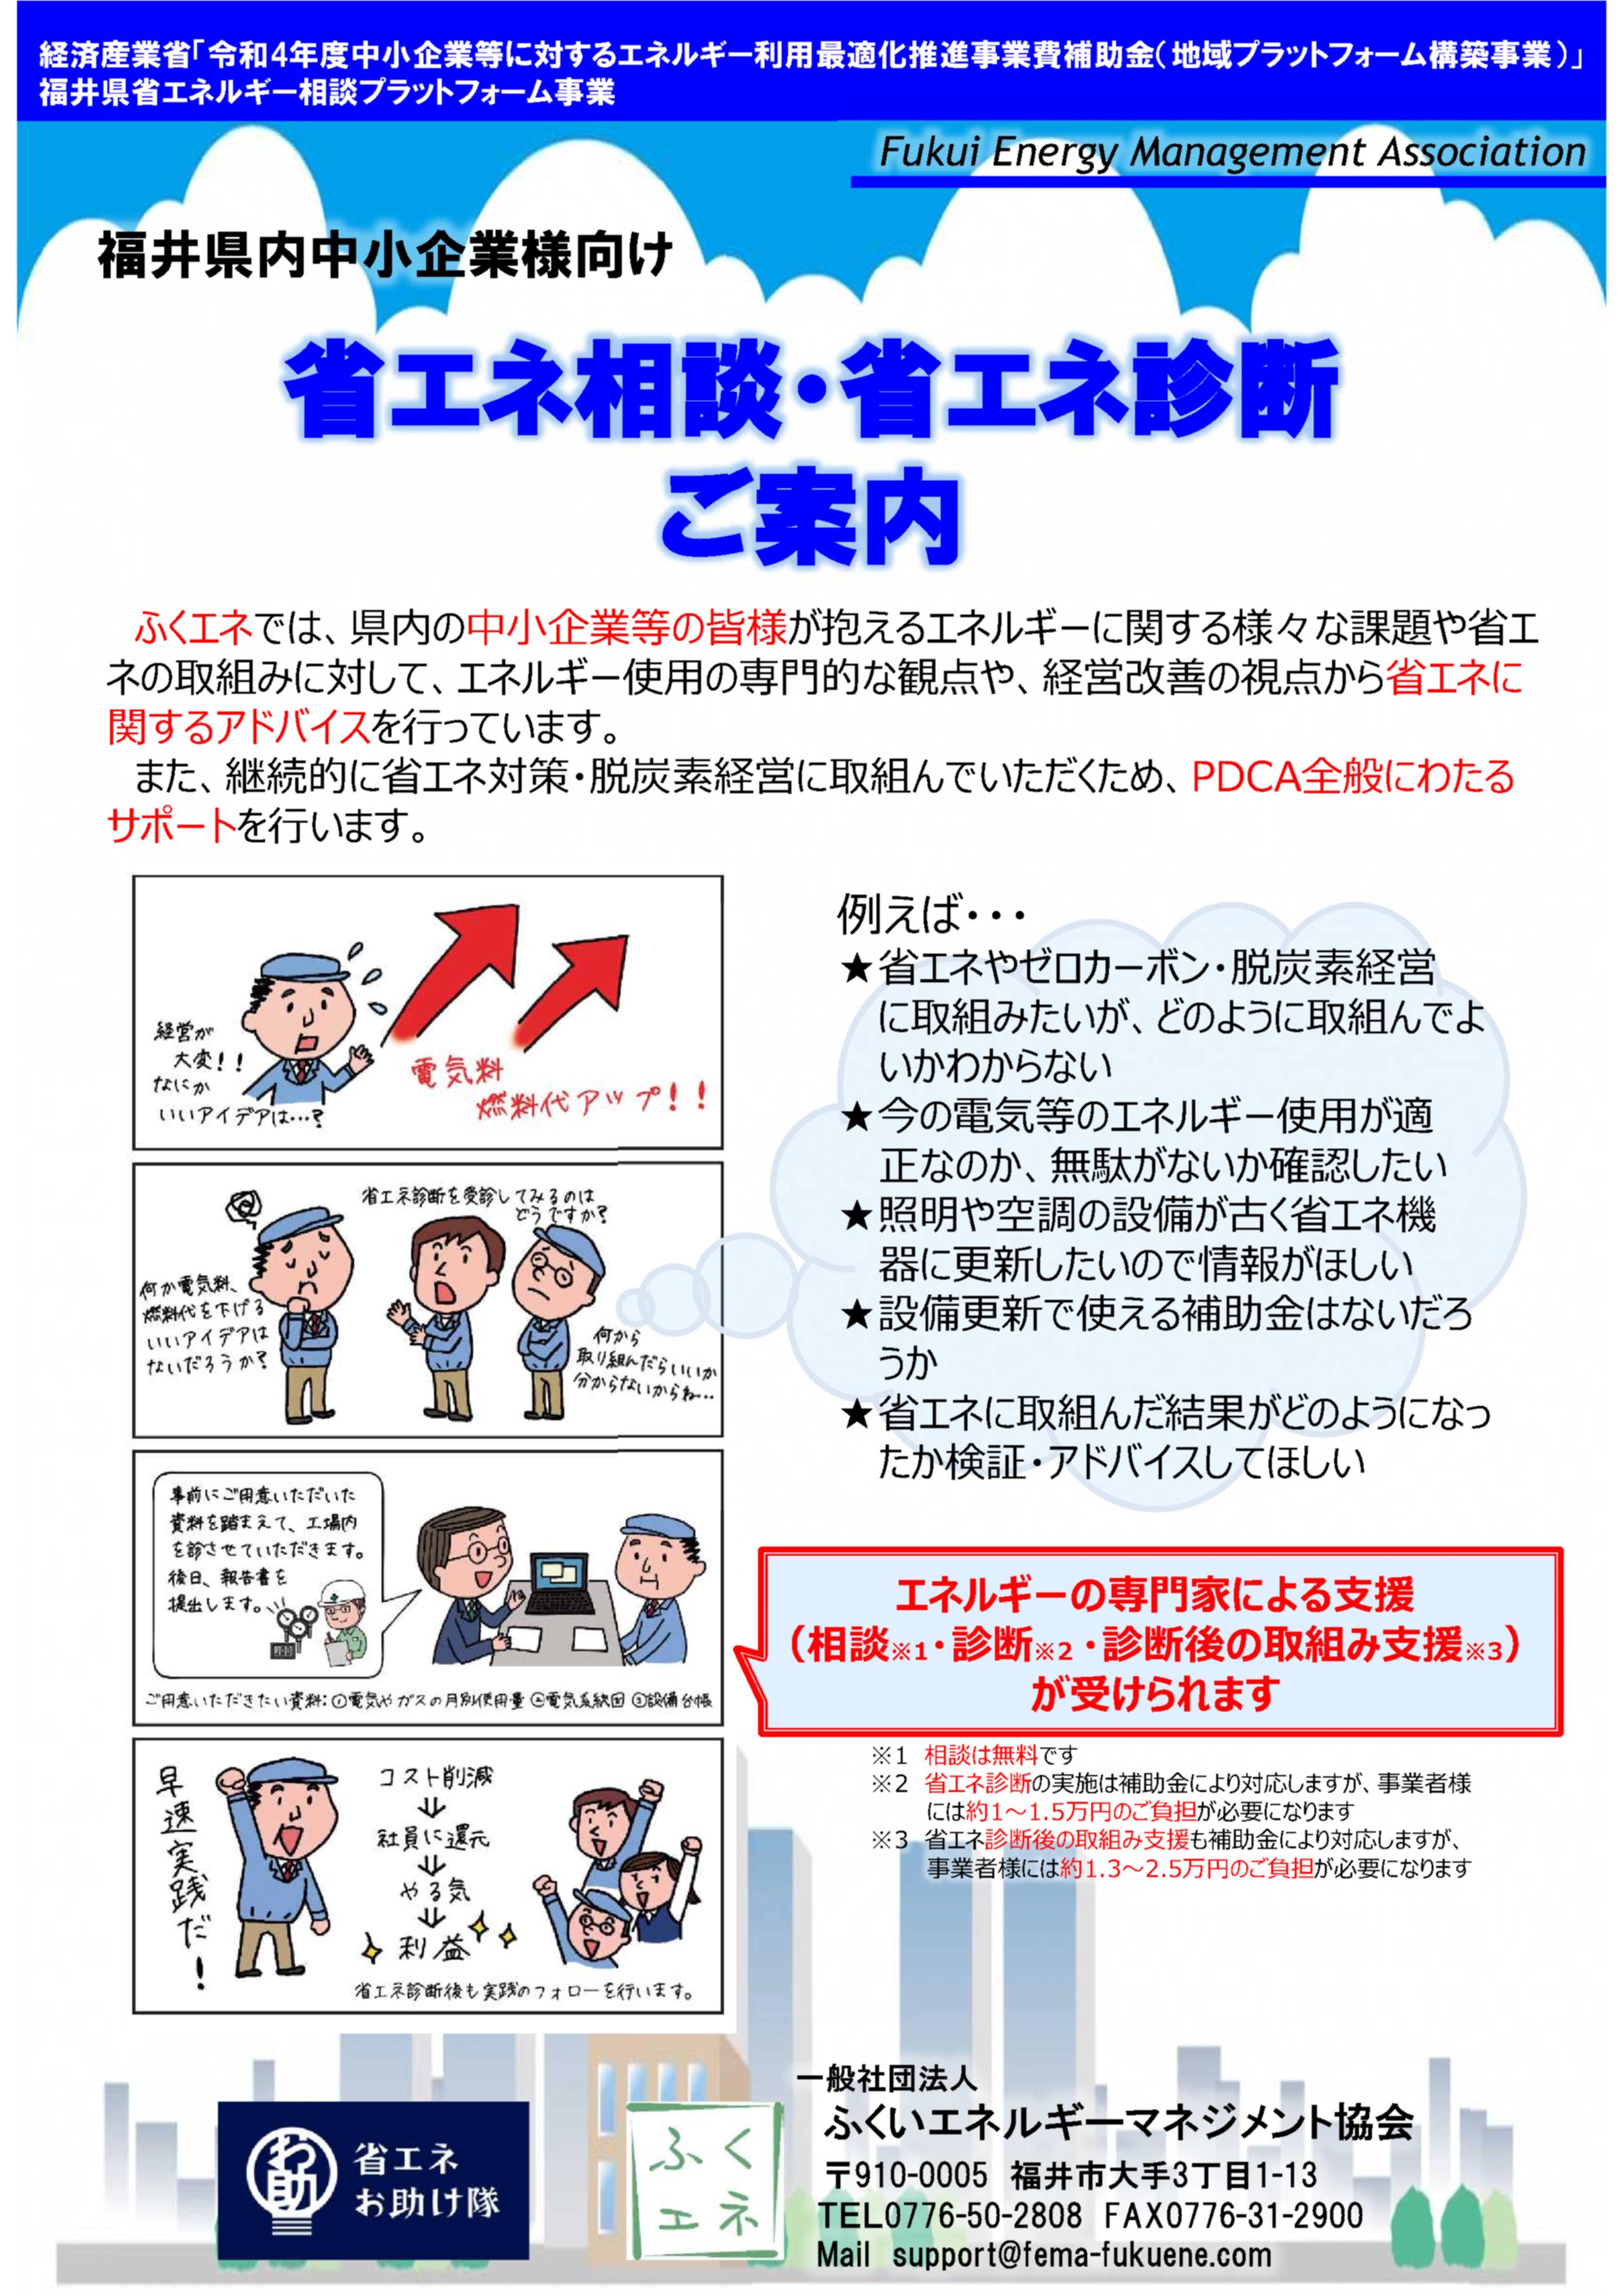 ふくいエネルギーマネジメント協会は福井県内の中小企業の省エネ取組みを支援します